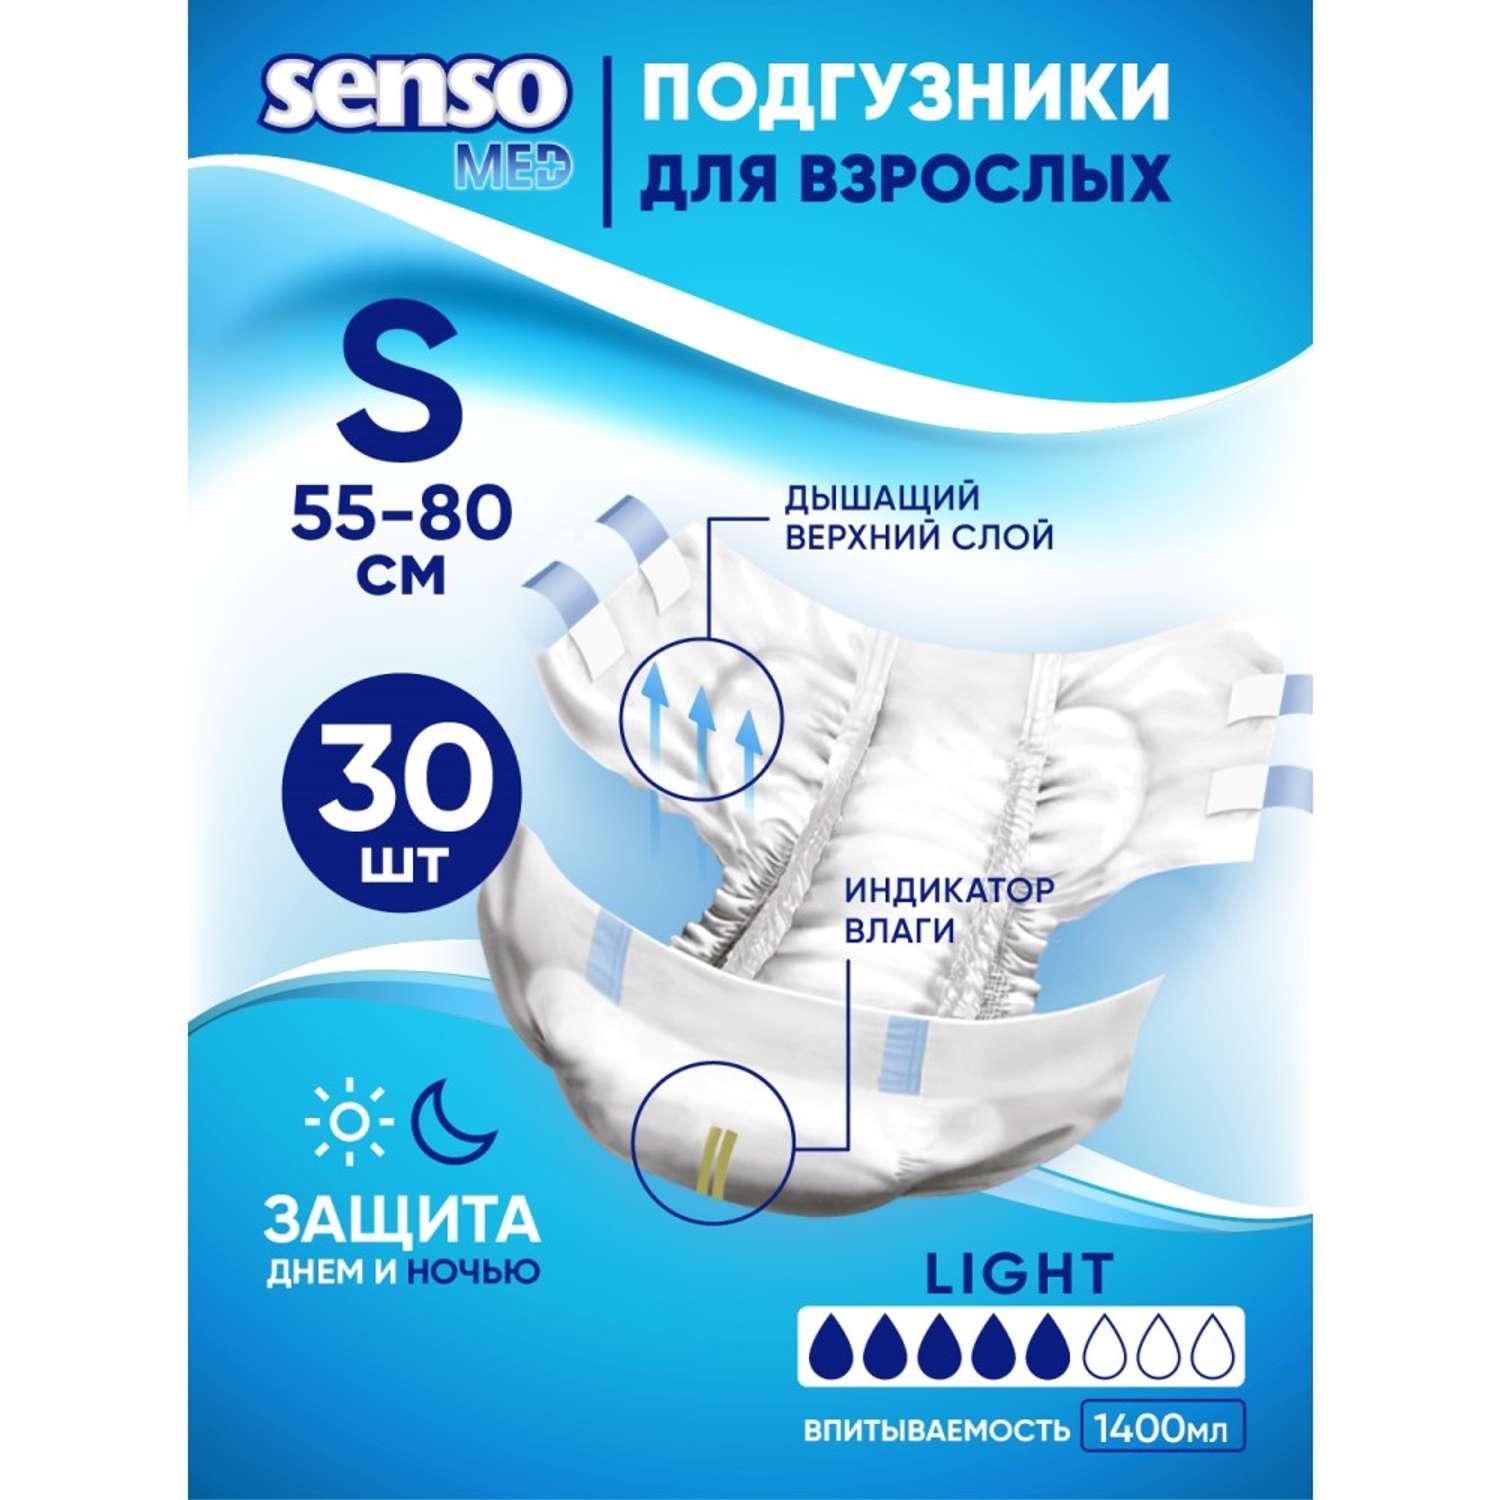 Подгузники для взрослых SENSO MED Standart S 55-80 см 30 шт - фото 1